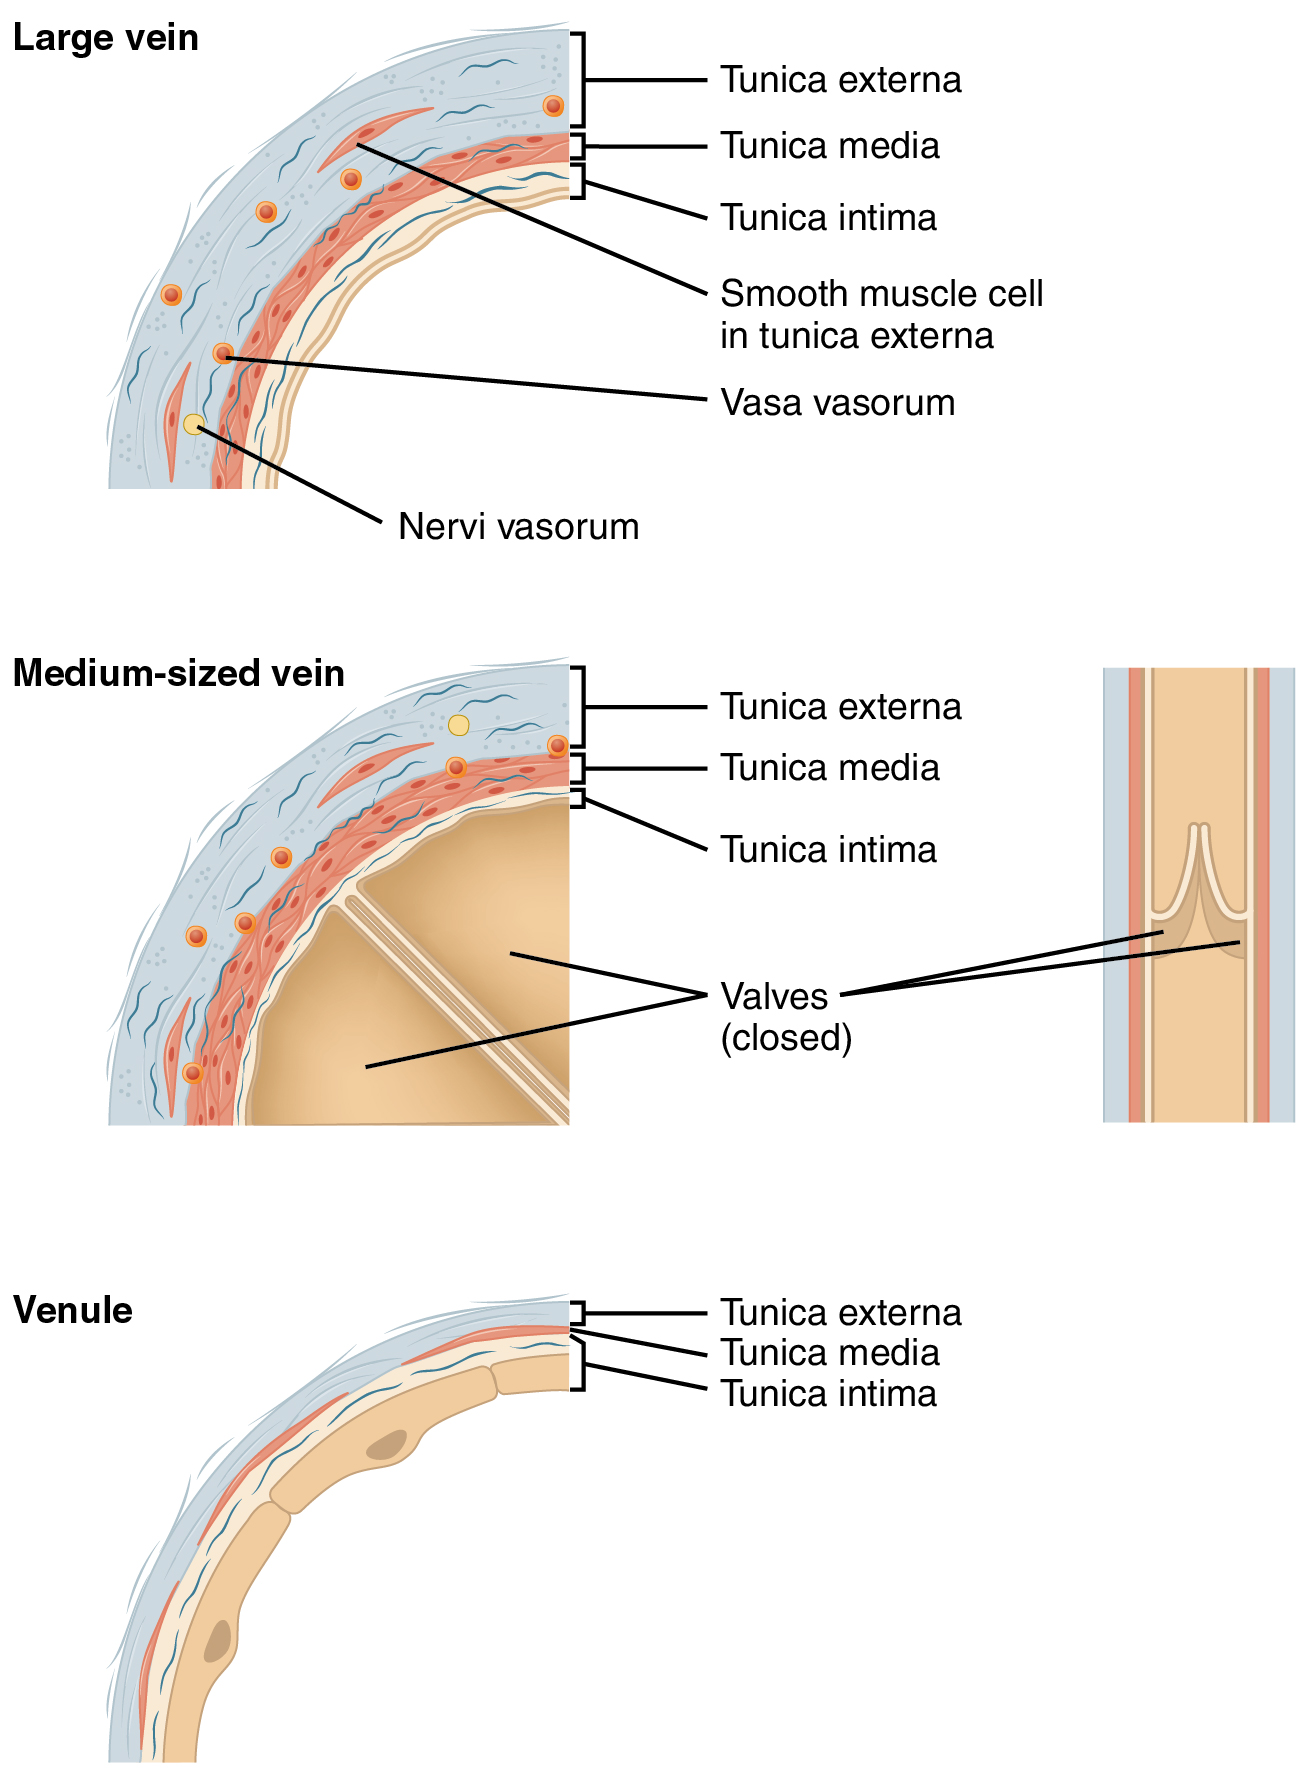 Types of veins